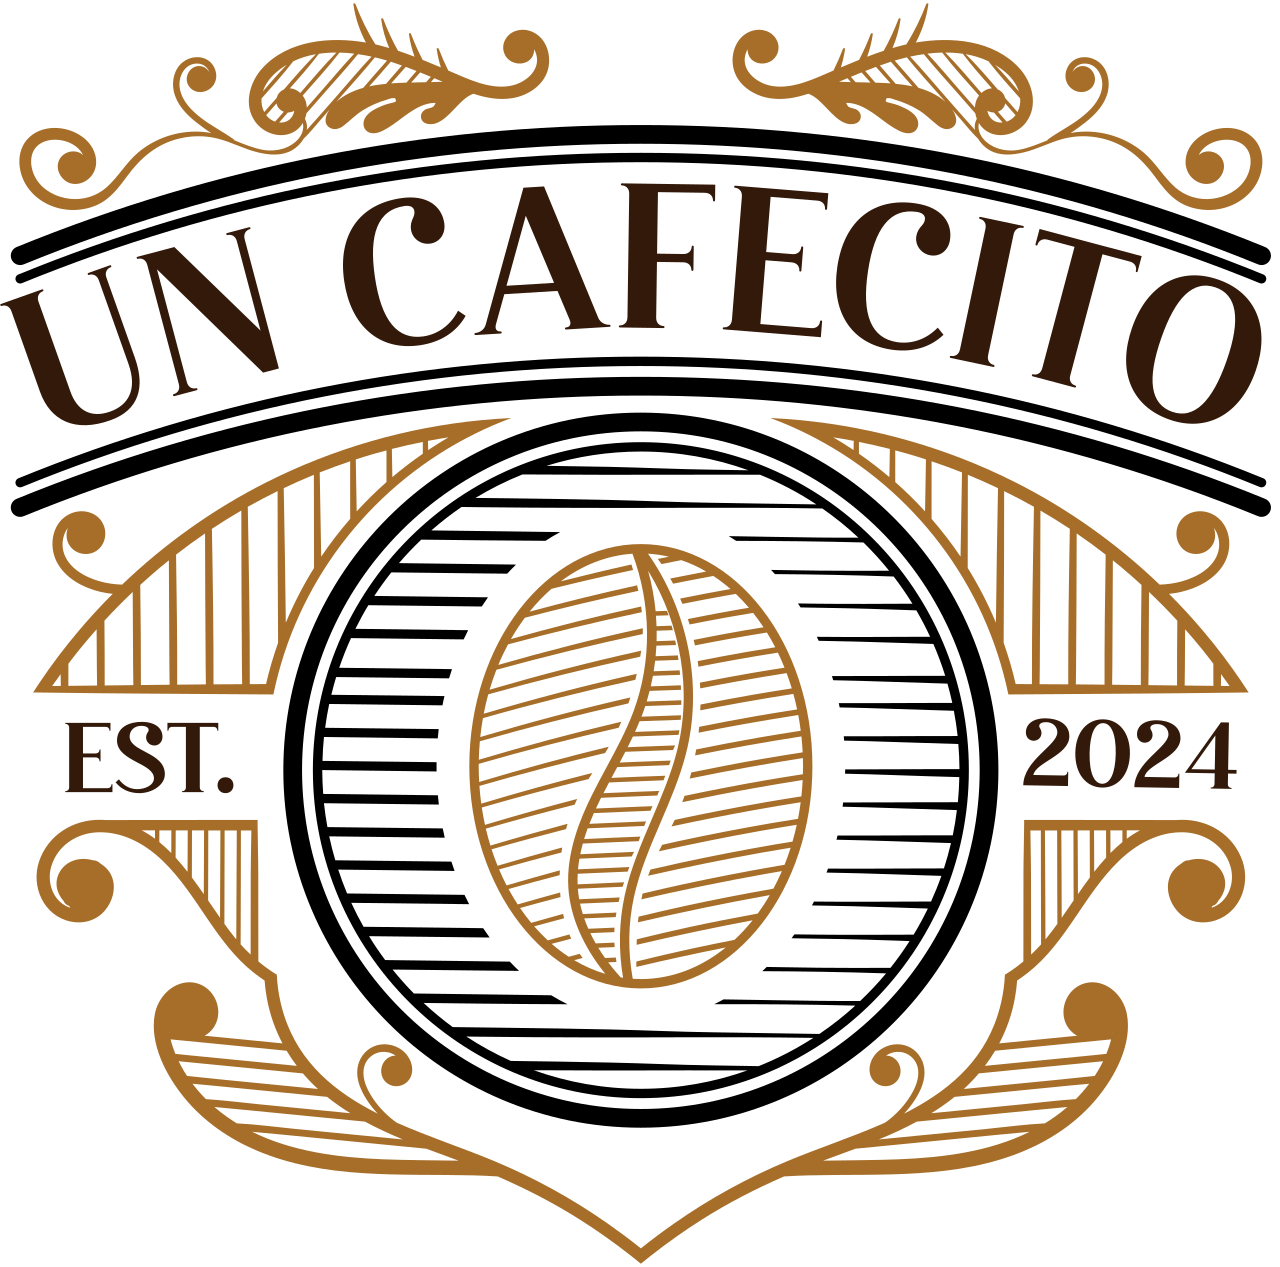 Un cafecito's logo